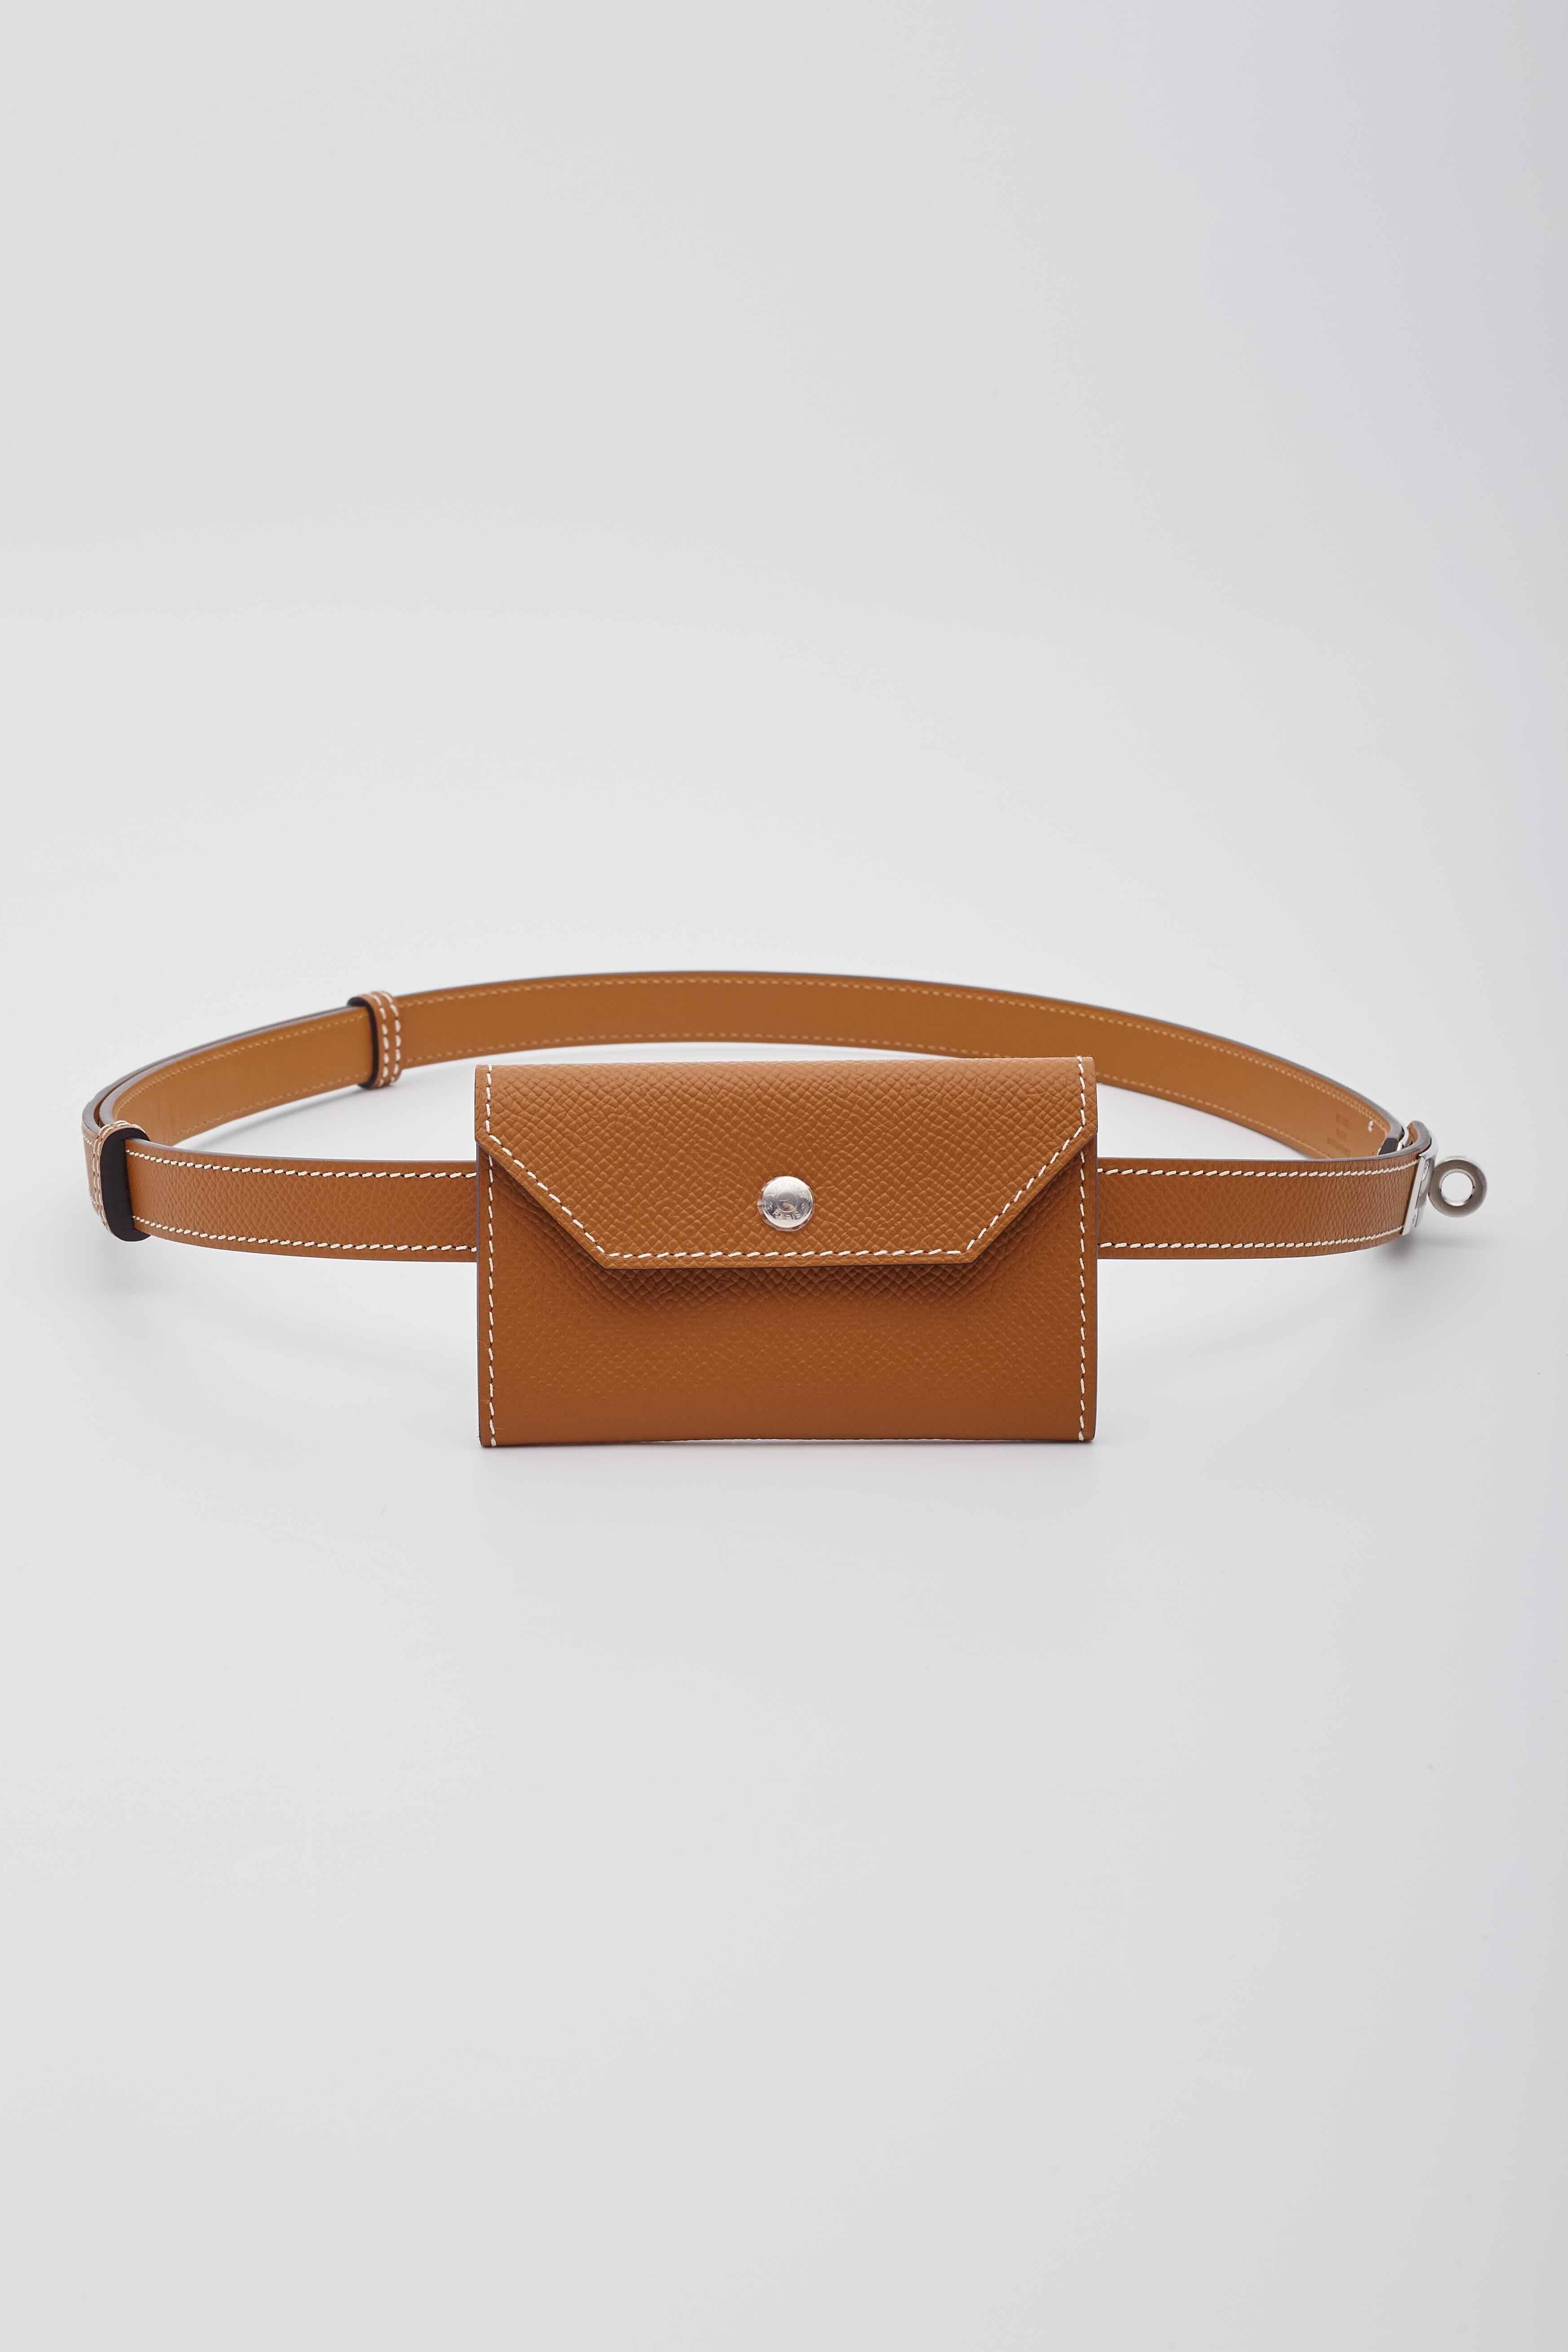 Hermes Beige Textured Leather Kelly Pocket 18 Mini Belt Bag For Sale 3